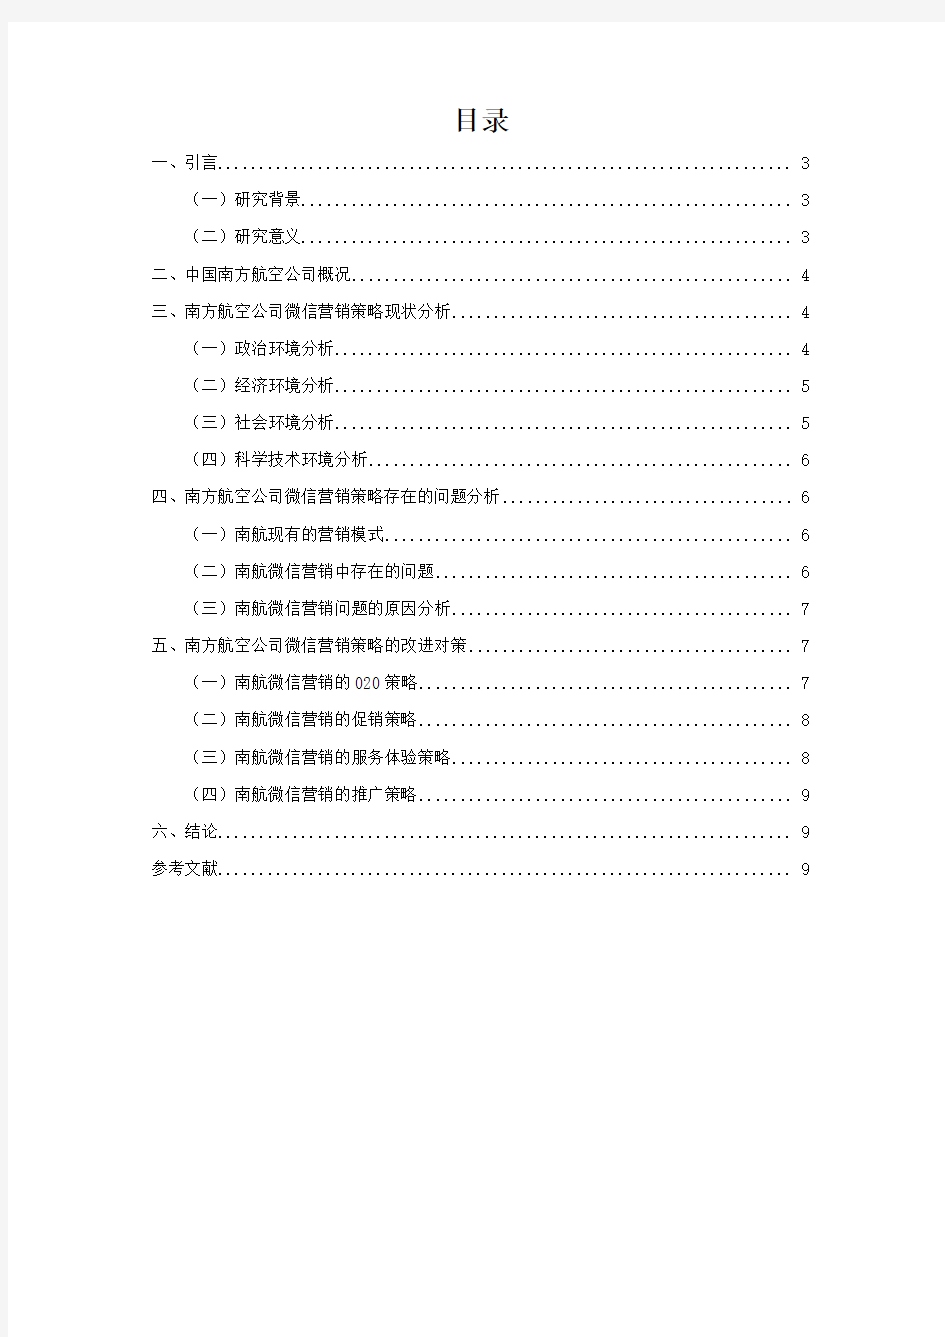 中国南方航空公司的微信营销策略研究 (3)